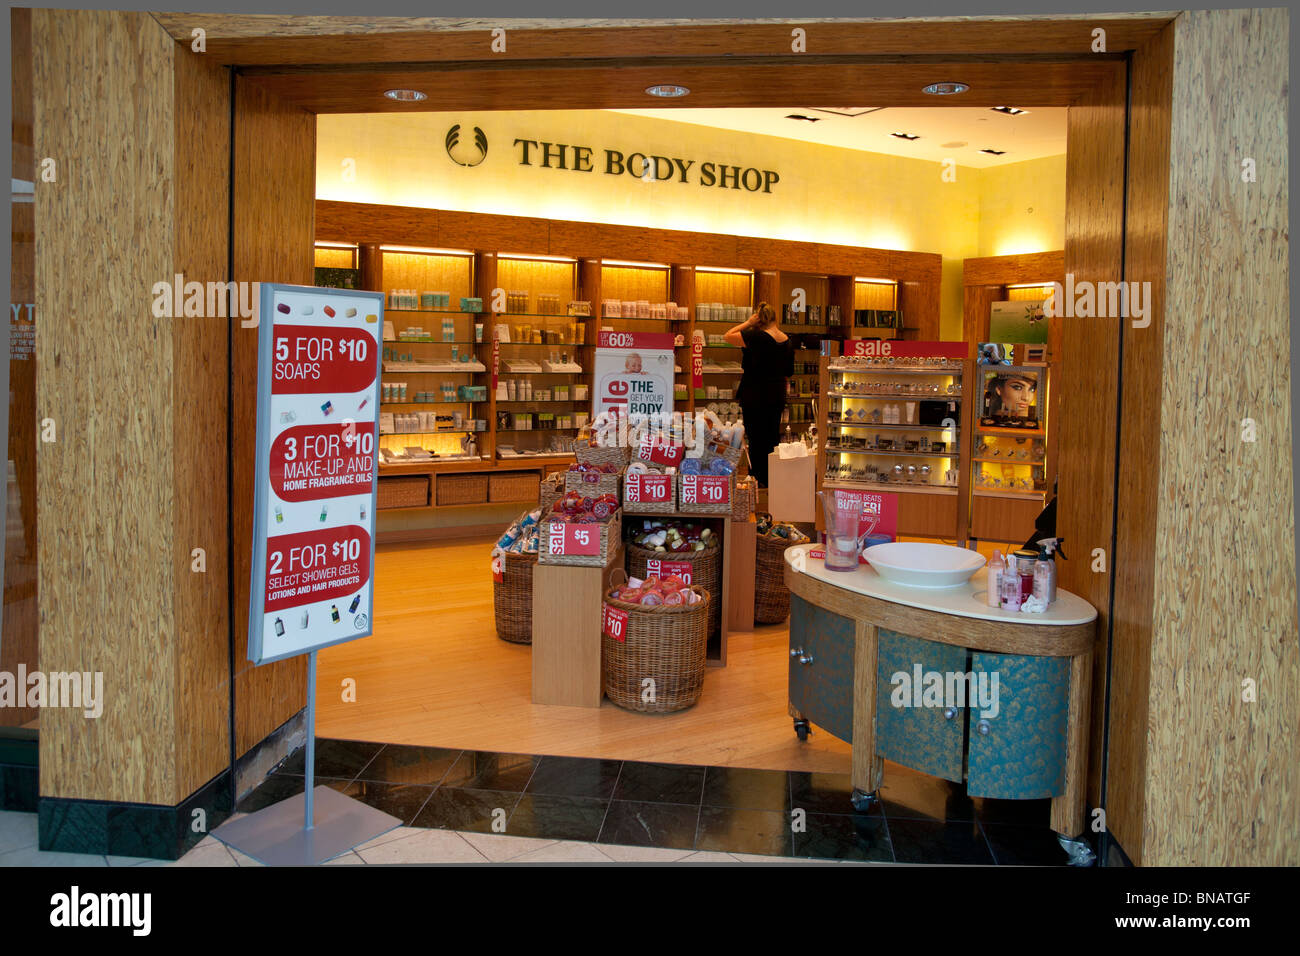 The Body Shop, King of Prussia Mall, près de Philadelphie, PA, USA Banque D'Images